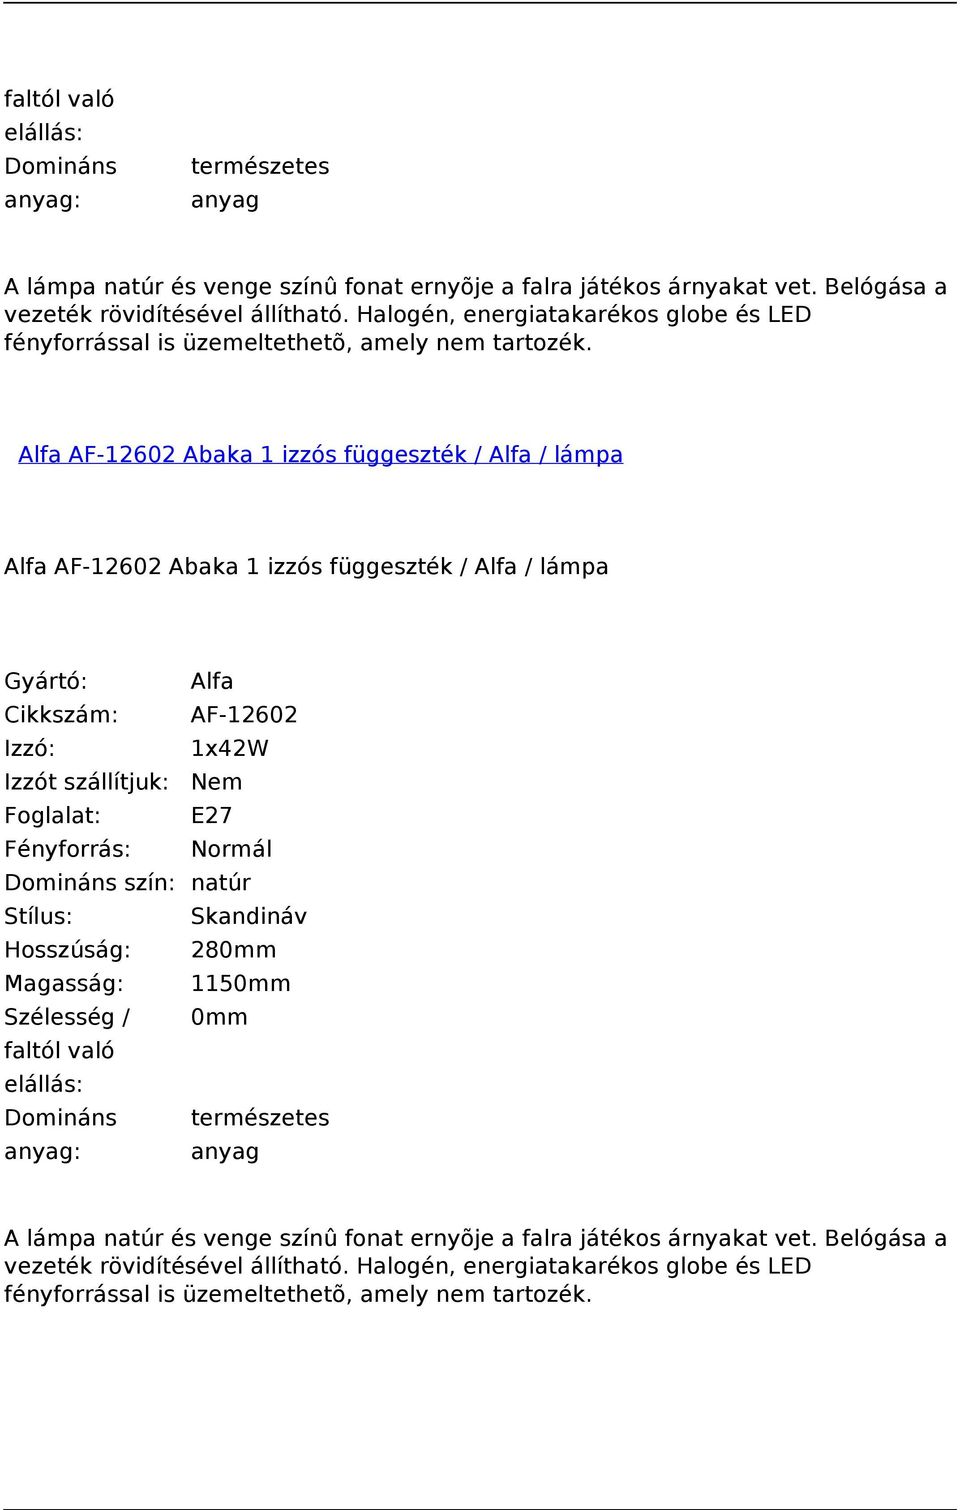 Alfa AF-12602 Abaka 1 izzós függeszték / Alfa / lámpa Alfa AF-12602 Abaka 1 izzós függeszték / Alfa / lámpa Cikkszám: AF-12602 Izzó: 1x42W Domináns szín: natúr Stílus: